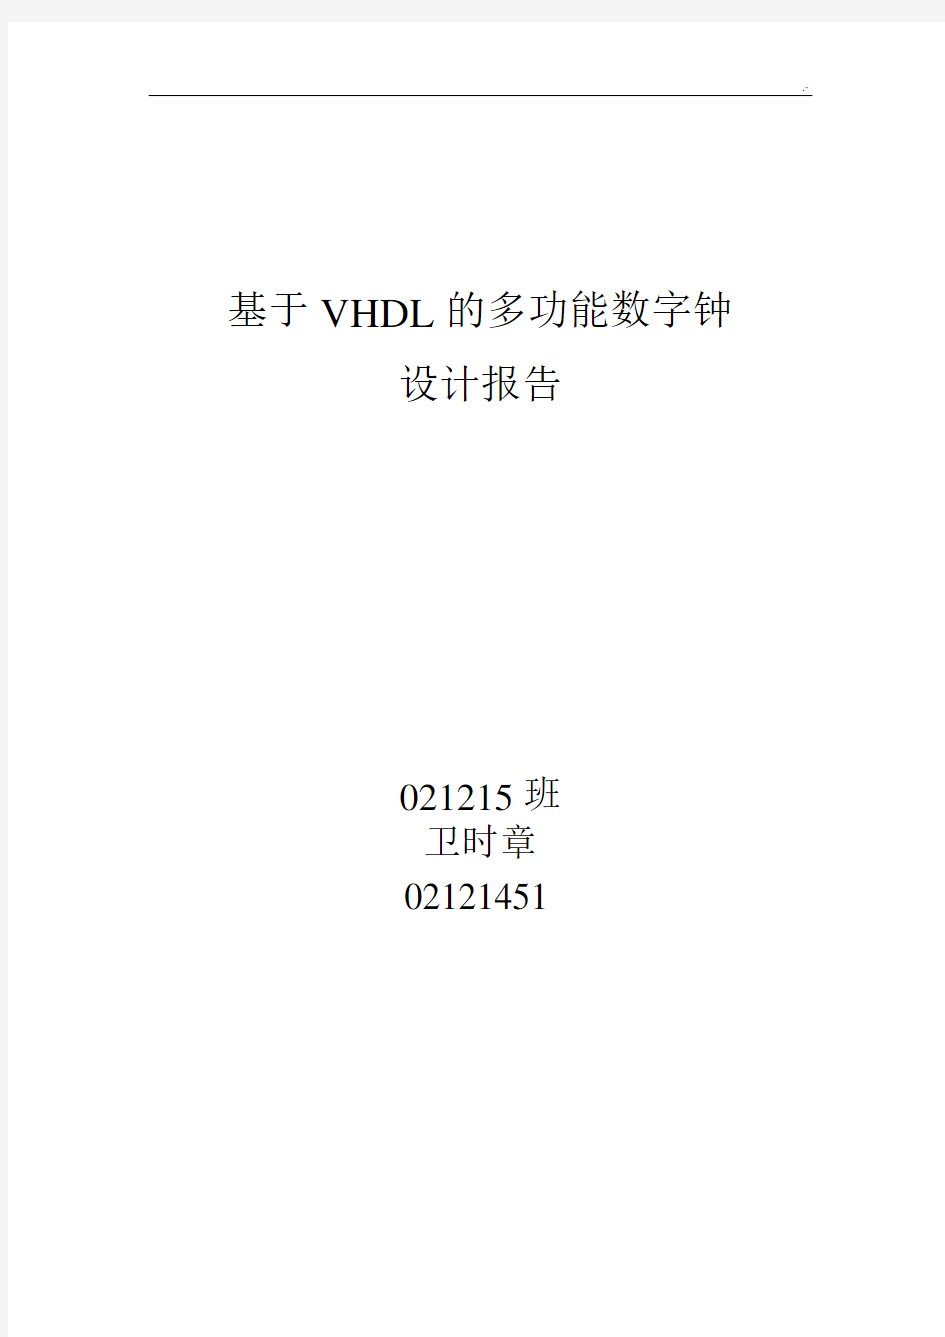 根据VHDL的多功能数字钟设计报告